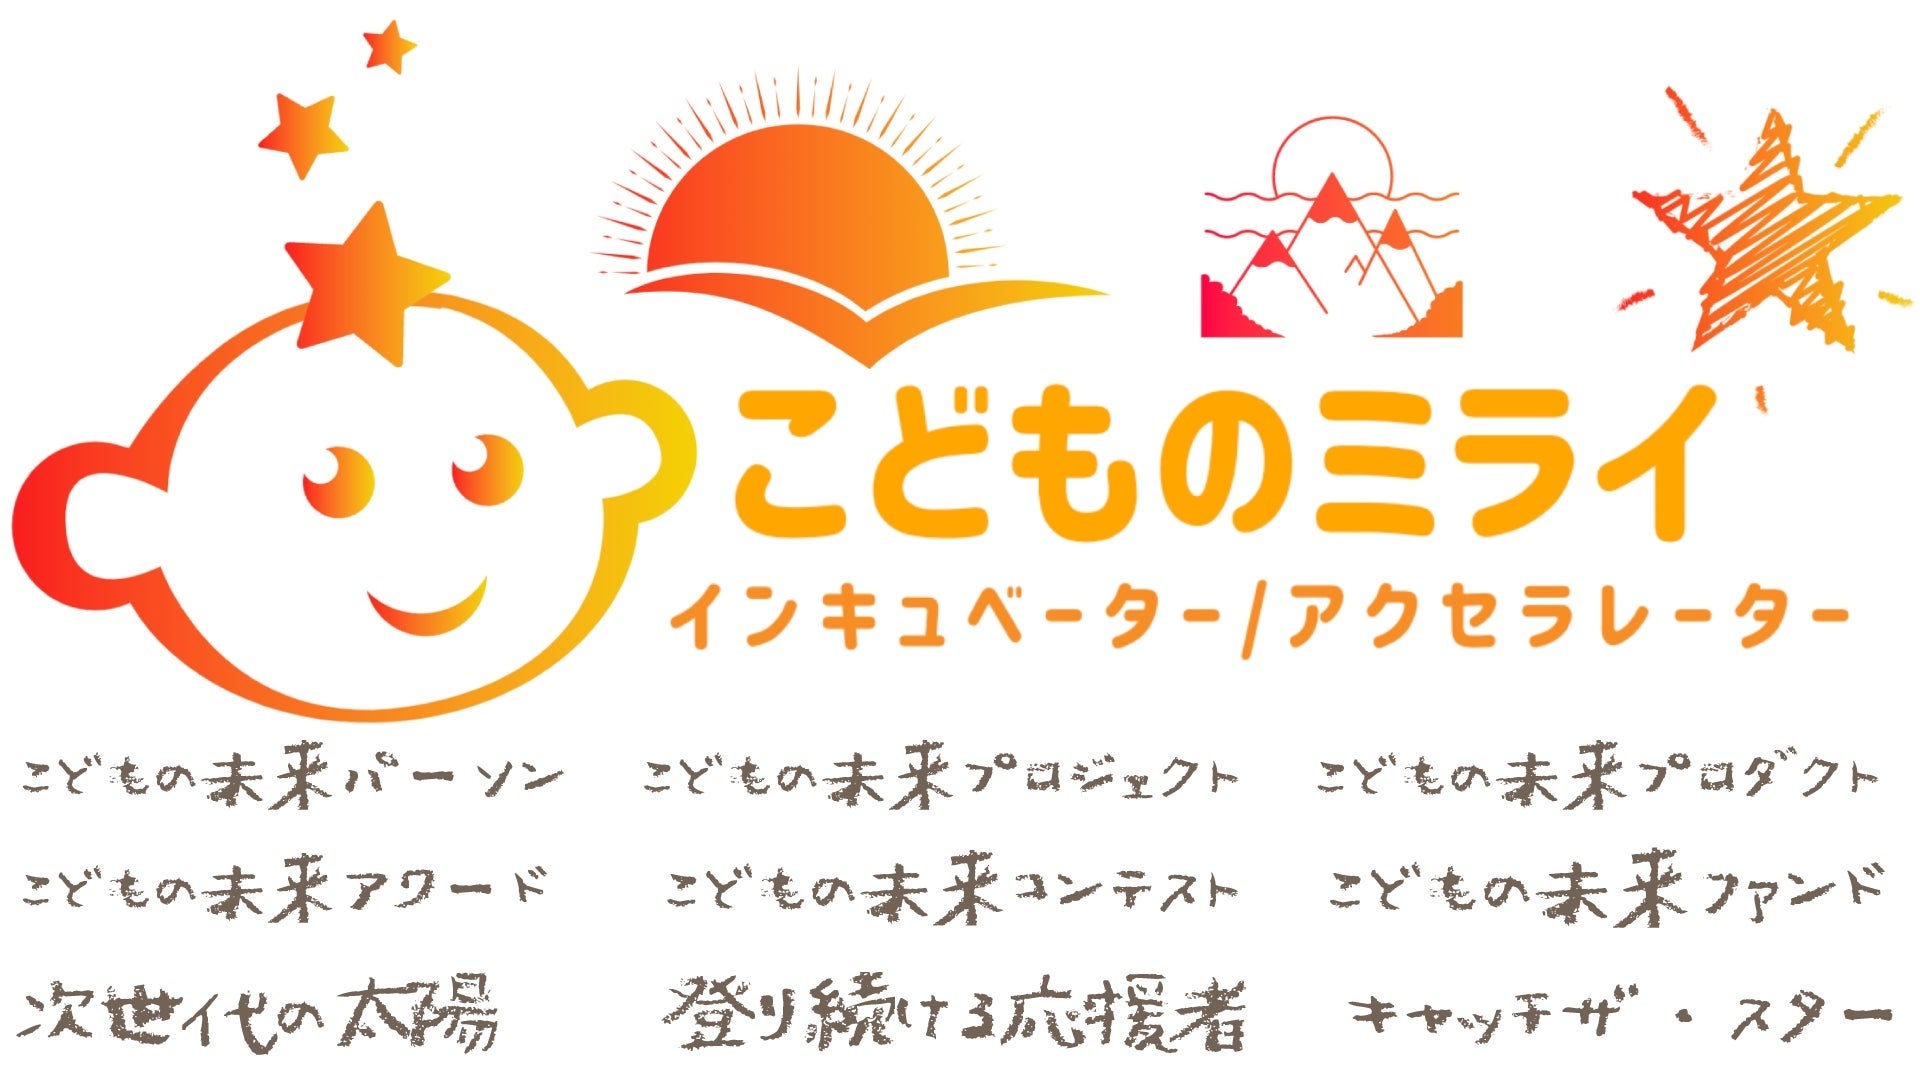 【50メディア以上の支援実績をもとにした『コミュニティドリブンマーケティング』】こどもの未来総研運営の「ママ広場」がマーケティングサービス開始。120名を突破した「東京都中央区ママ広場」とも連携のサブ画像2